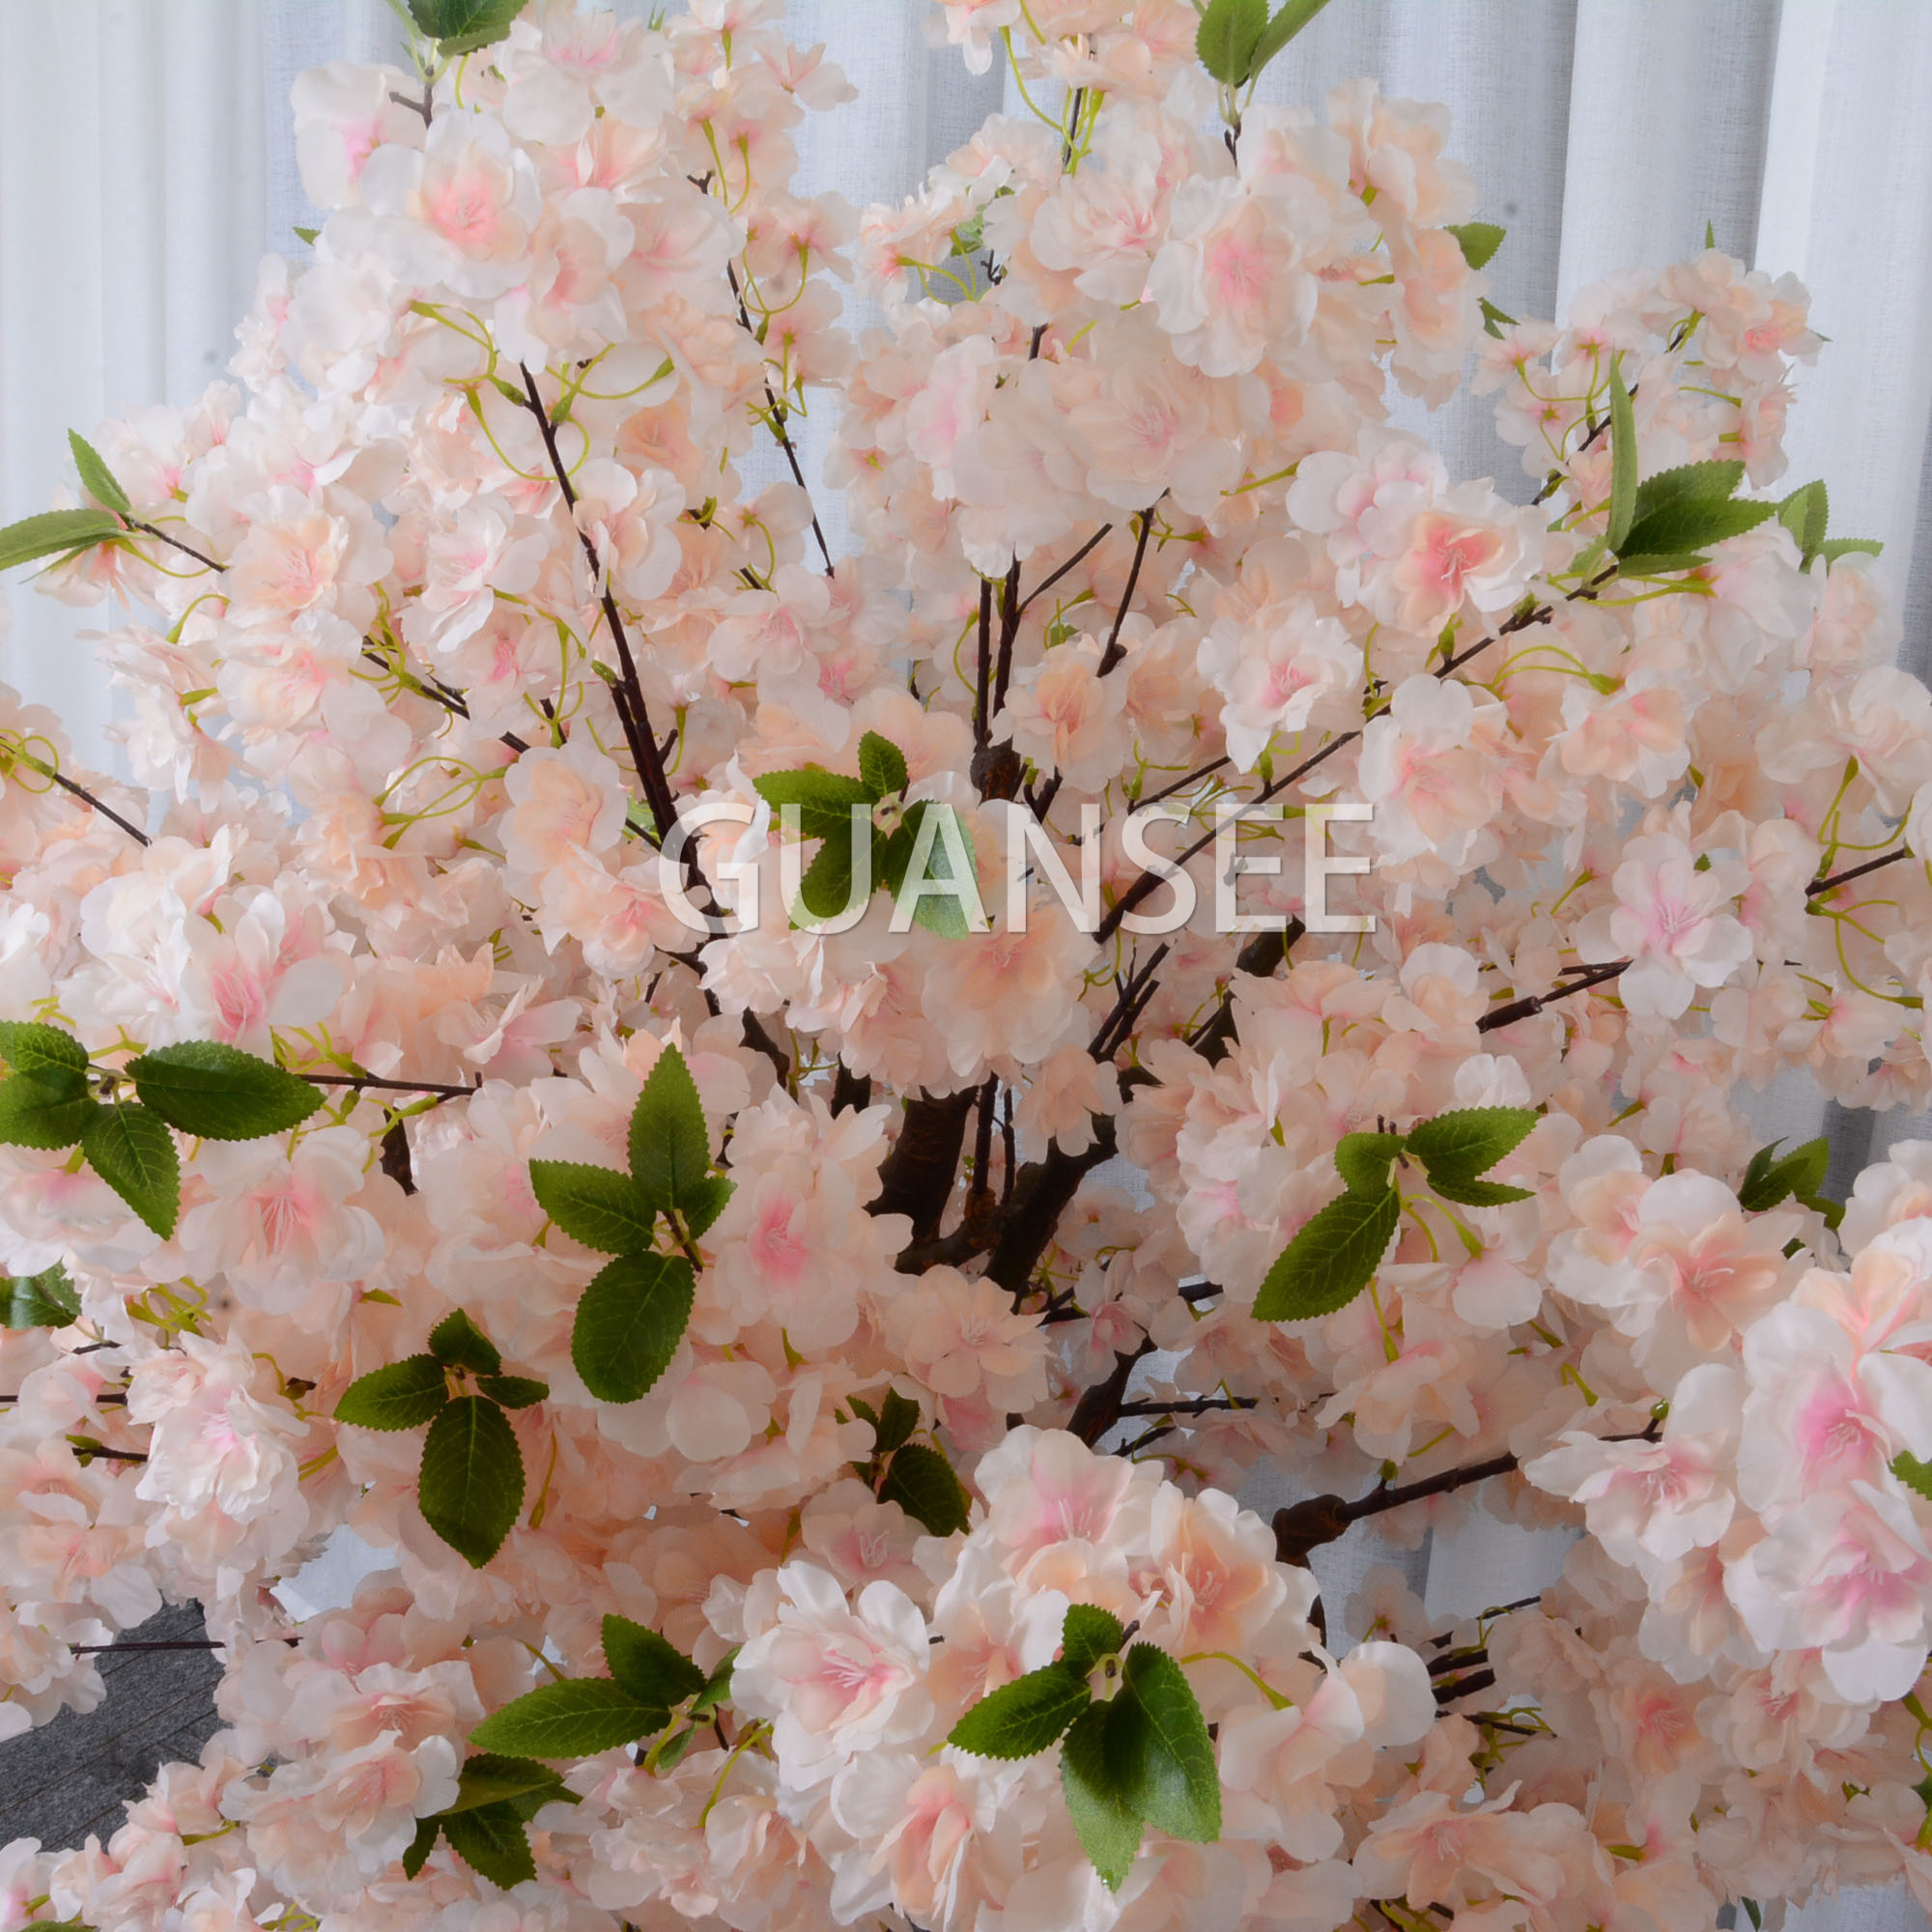  Centre de table de mariage champagne 5 pieds arbre de fleurs de cerisier artificiel 